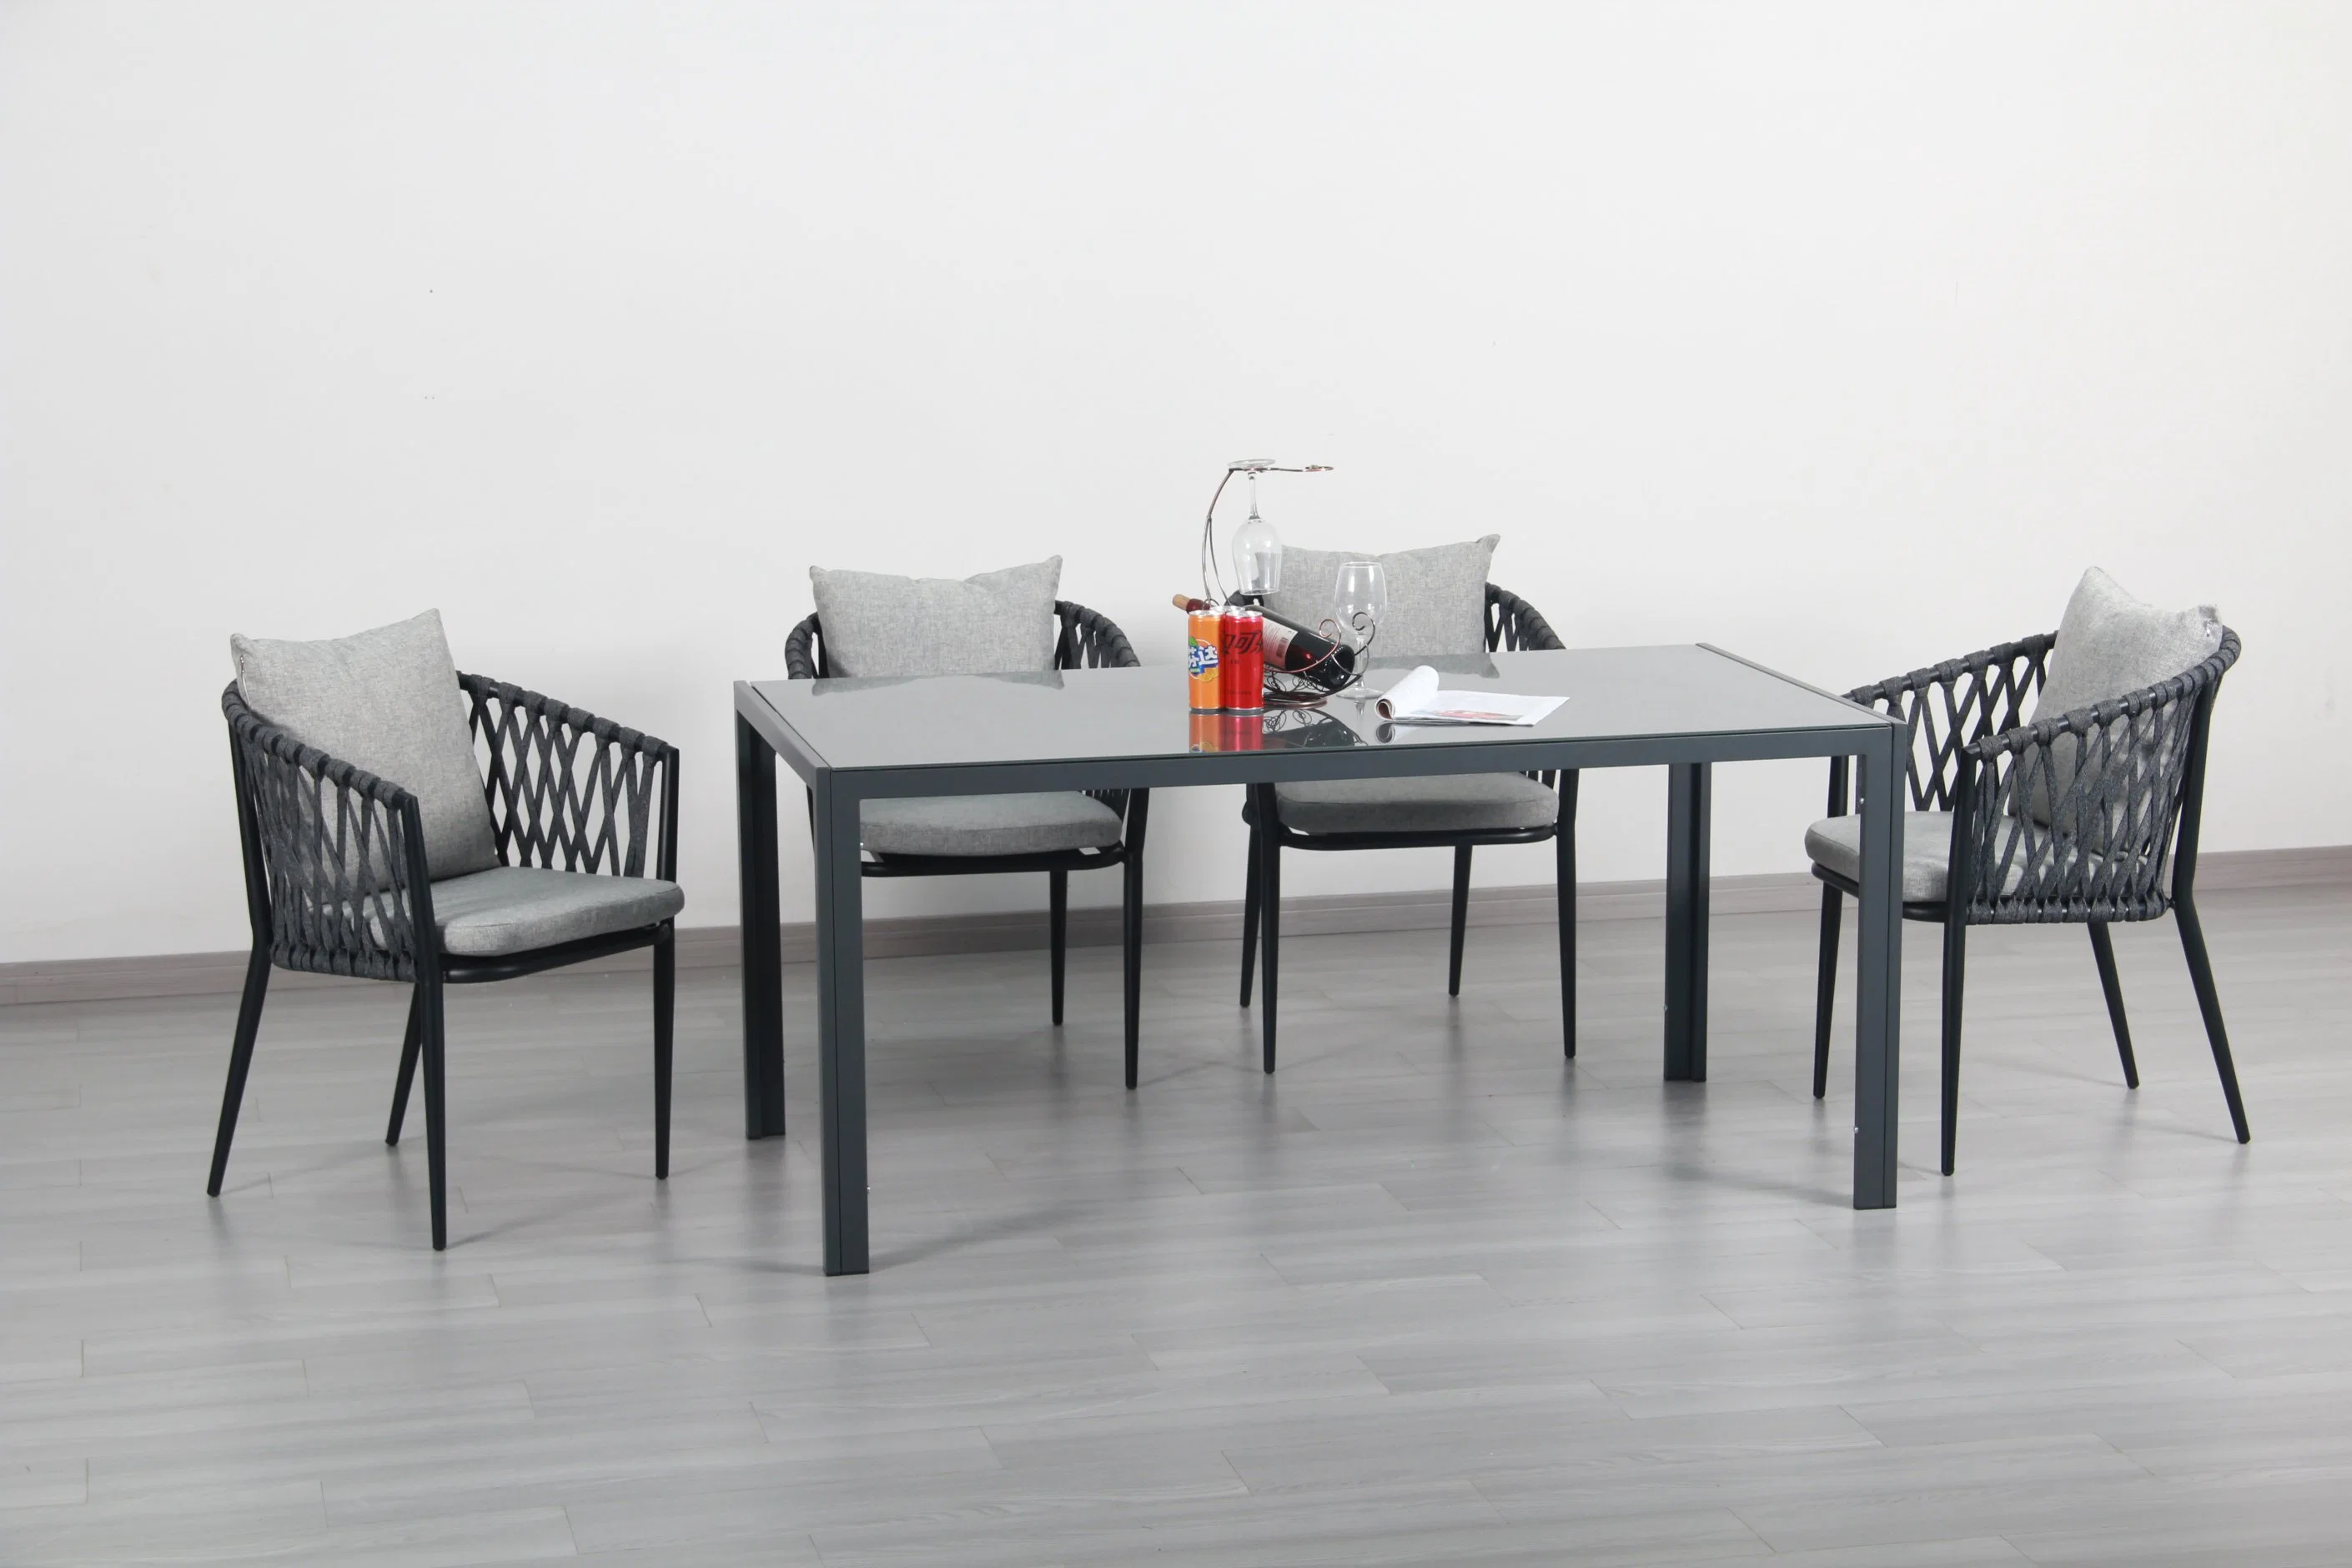 Rattan Rope Woven Casa moderna silla al aire libre comedor conjunto de mesa Mobiliario de jardín del hotel